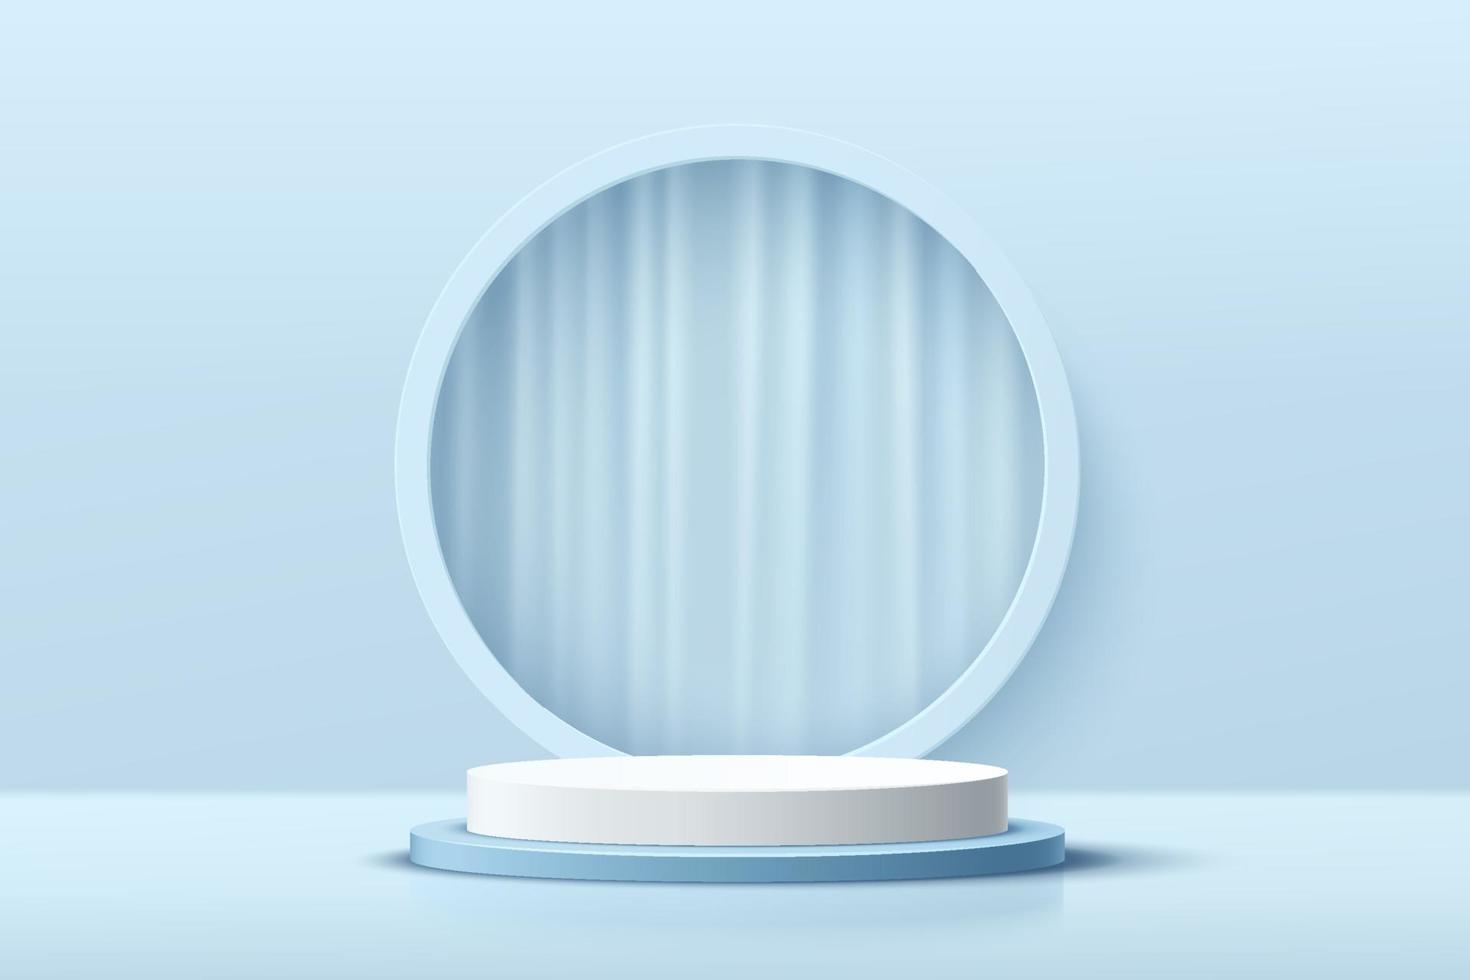 podio moderno con piedistallo cilindrico bianco e blu. scena minima della parete di colore blu pastello astratto. sfondo geometrico del cerchio con tenda. rendering vettoriale forma 3d, presentazione del display del prodotto cosmetico.